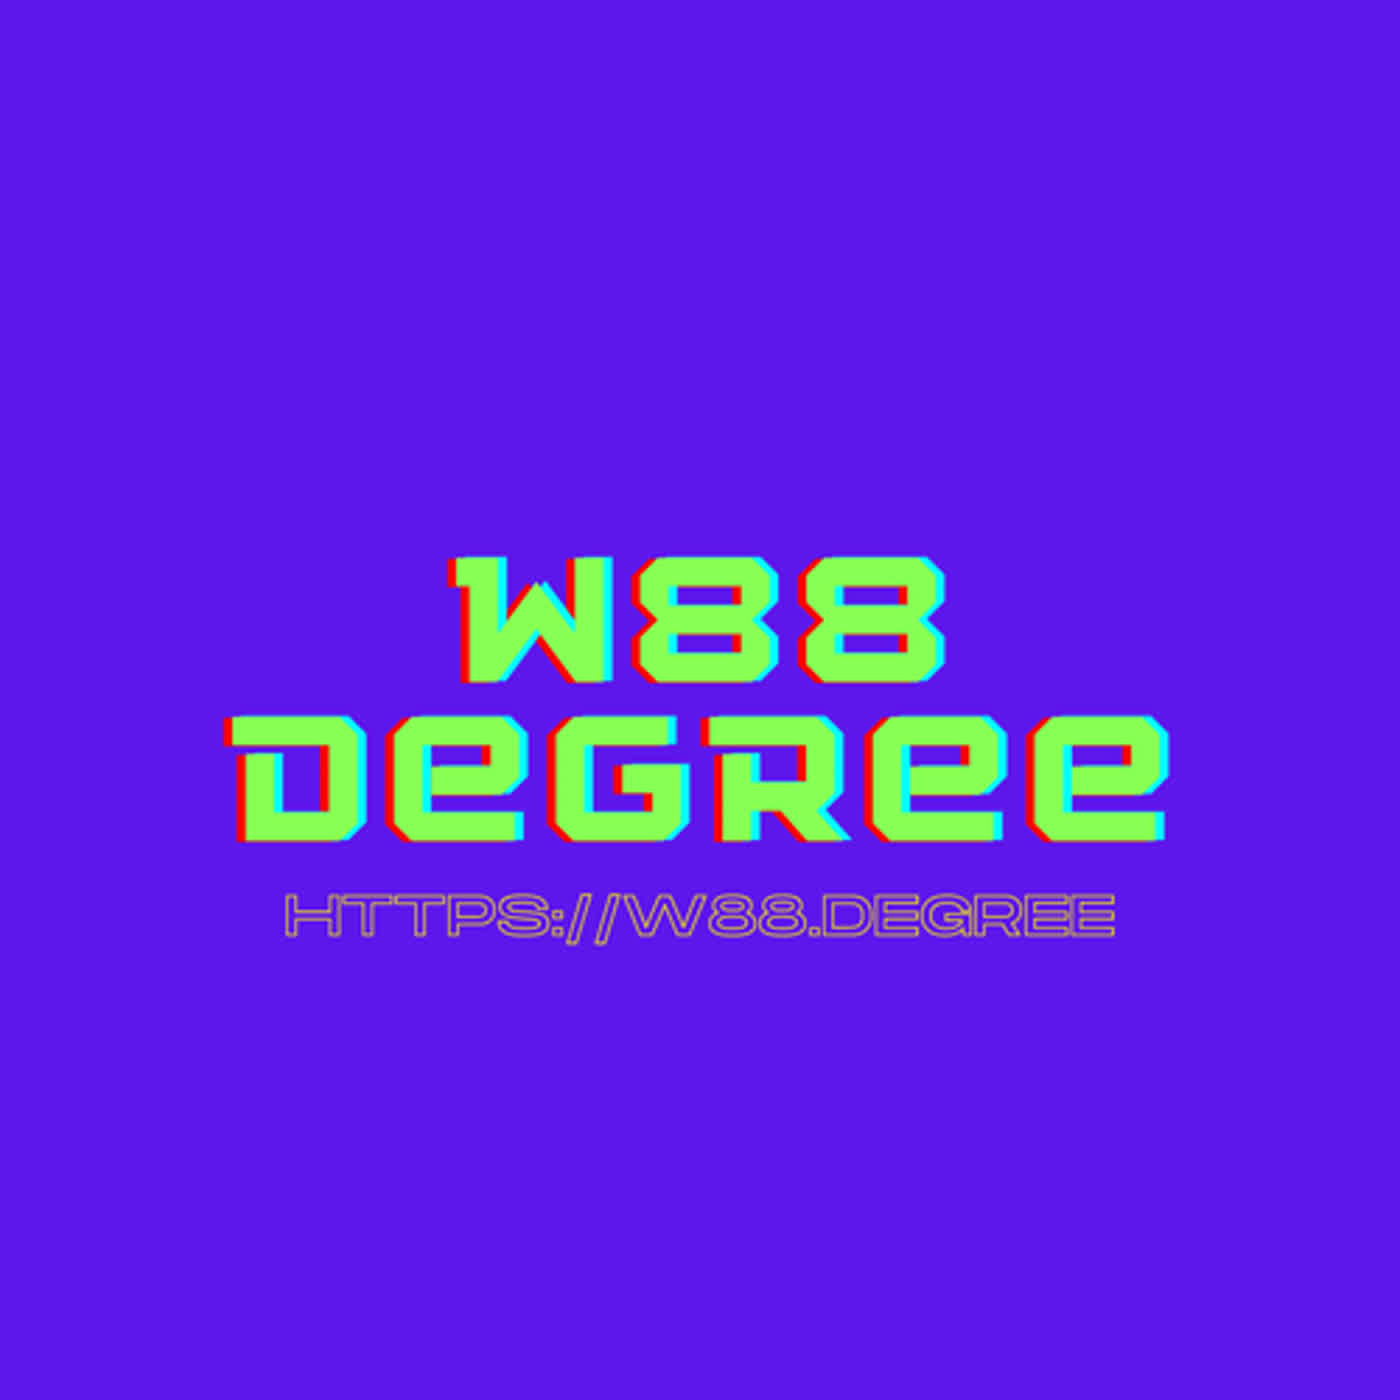 W88 degree